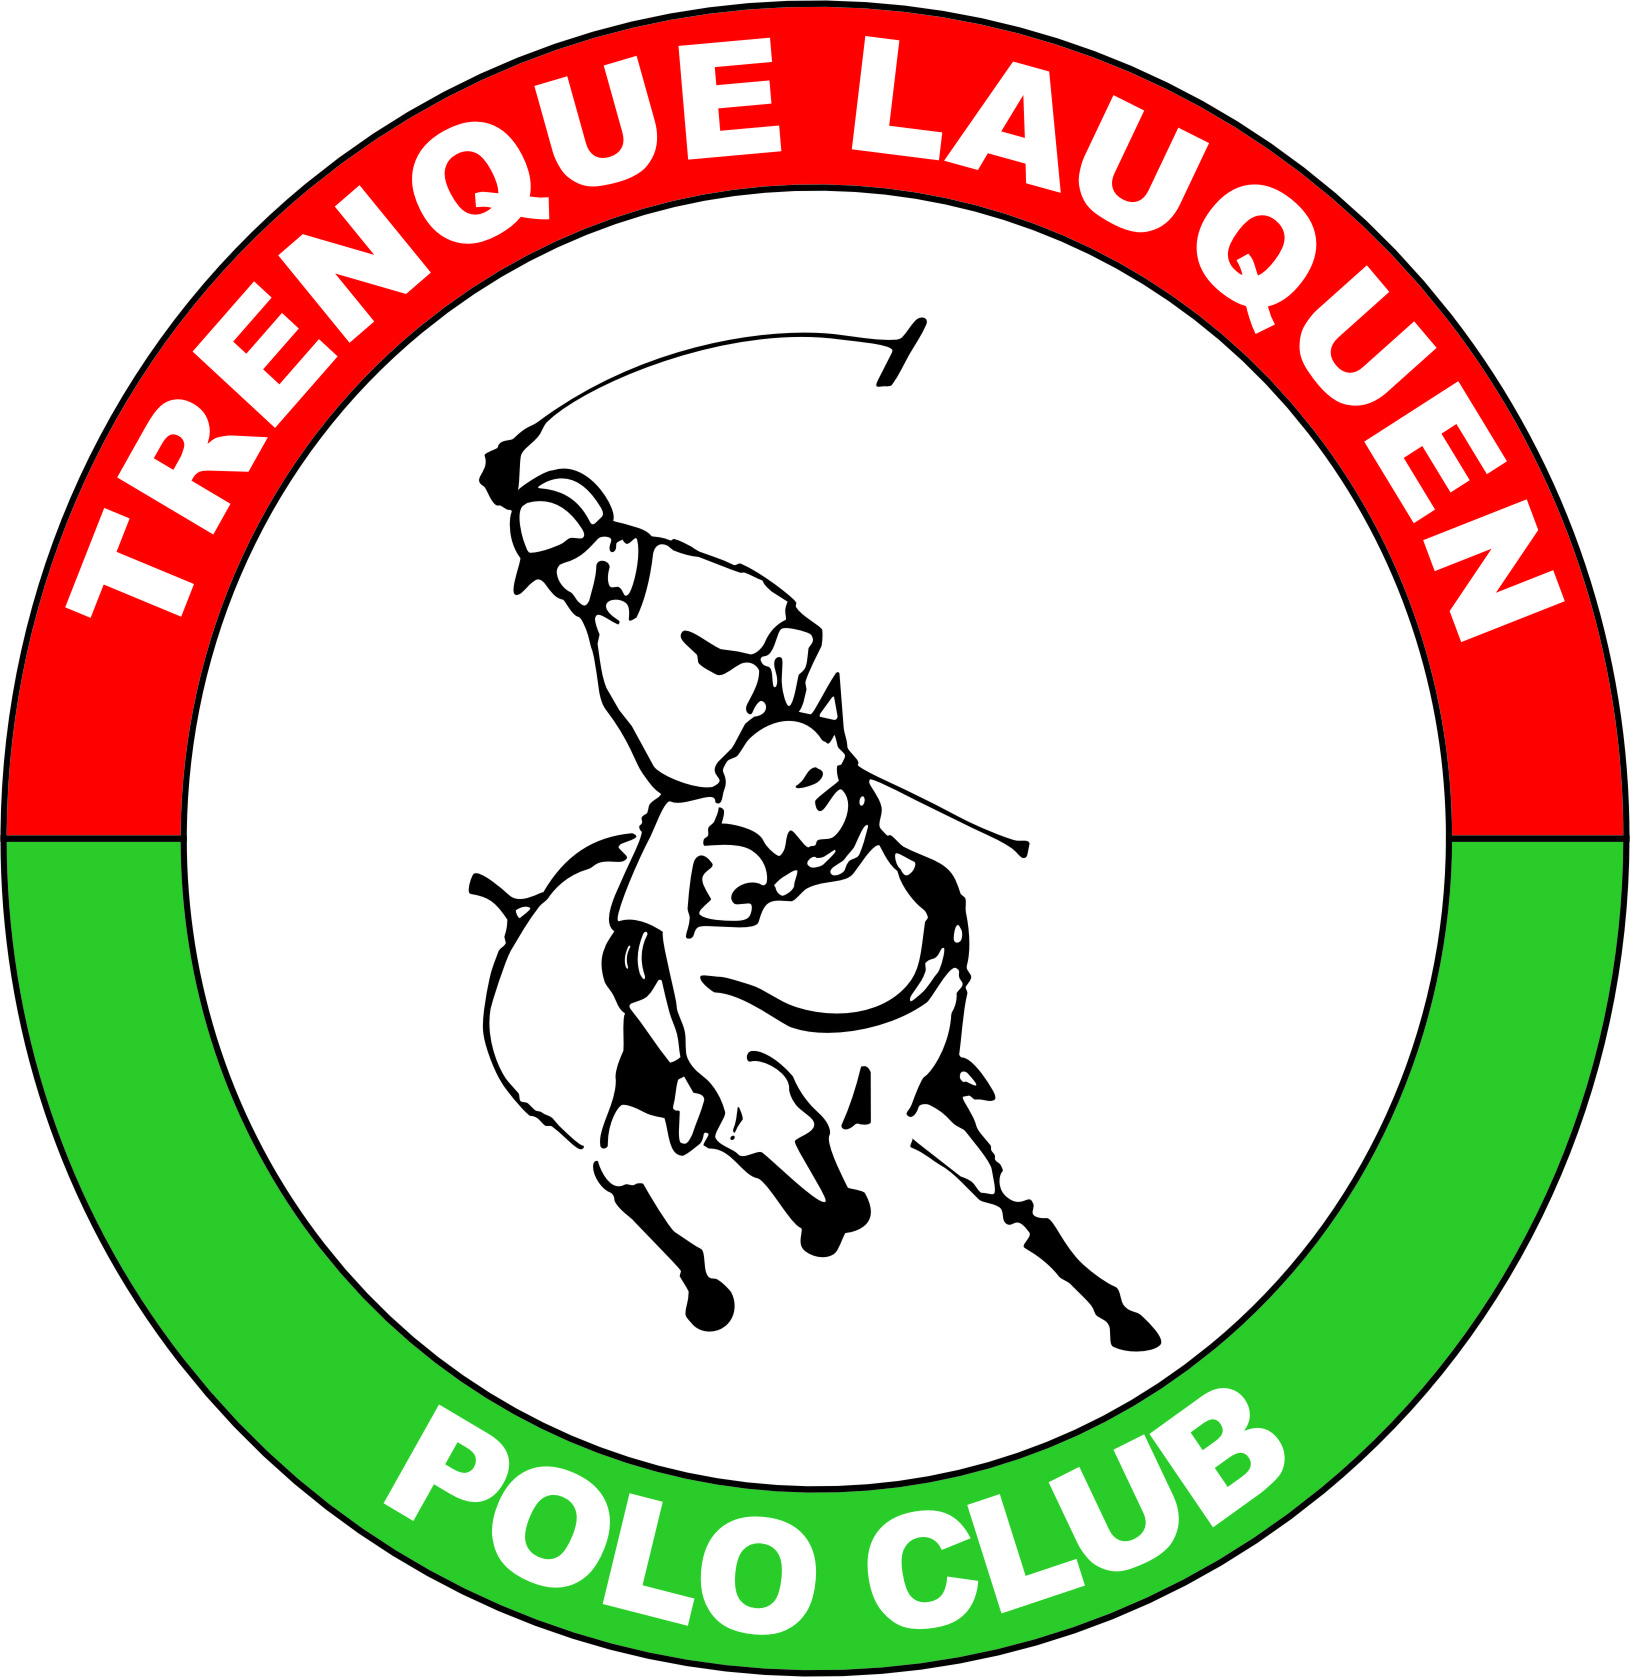 Trenque Lauquen Polo Club